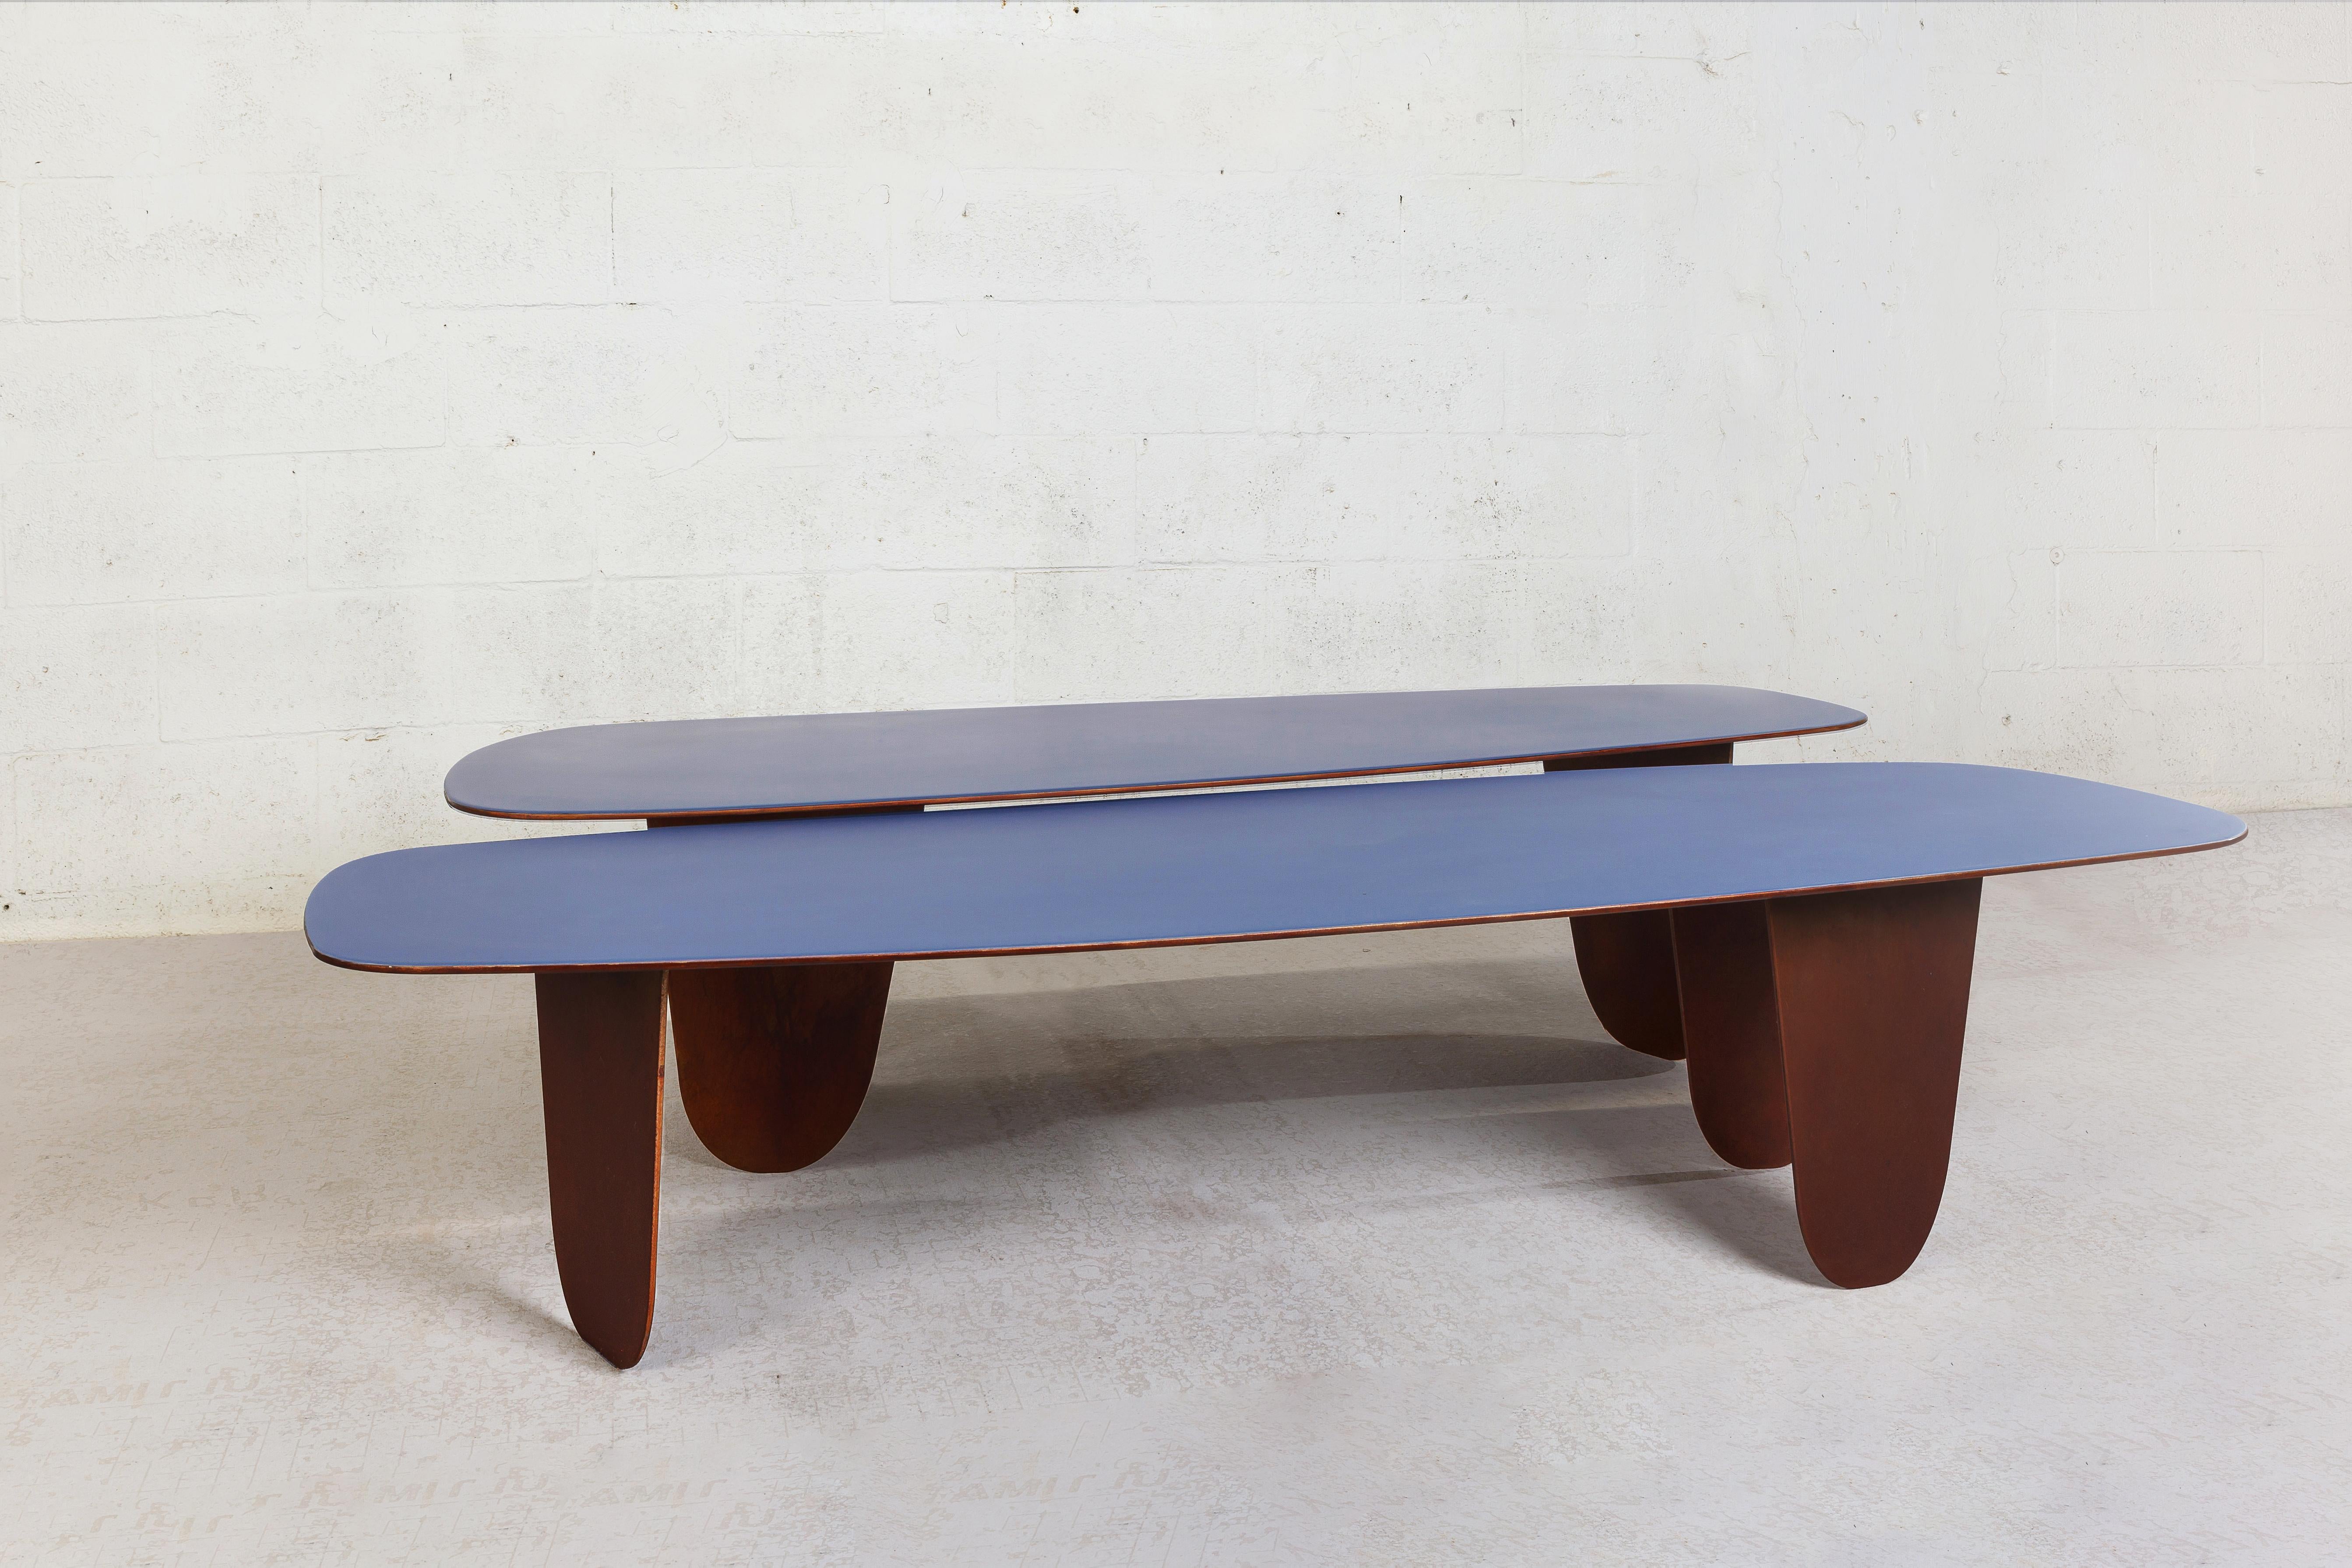 Les tables Osaka s'inspirent de la philosophie japonaise du minimalisme organique pour créer simplicité, harmonie et beauté dans les objets du quotidien. La table est fabriquée en acier et finie dans une riche patine brune qui donne à la pièce un